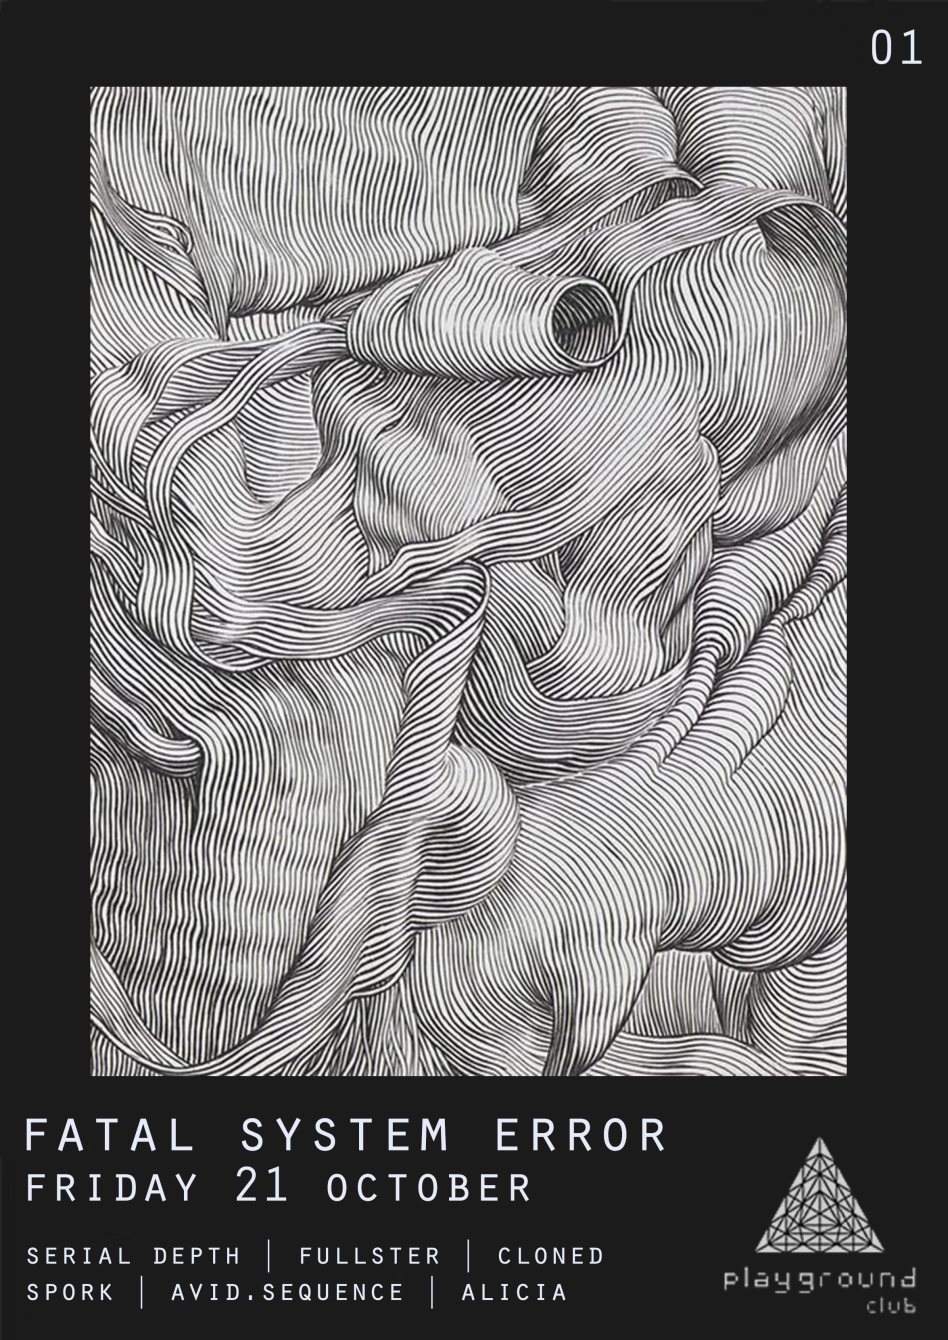 Fatal System Error [01] - Página frontal